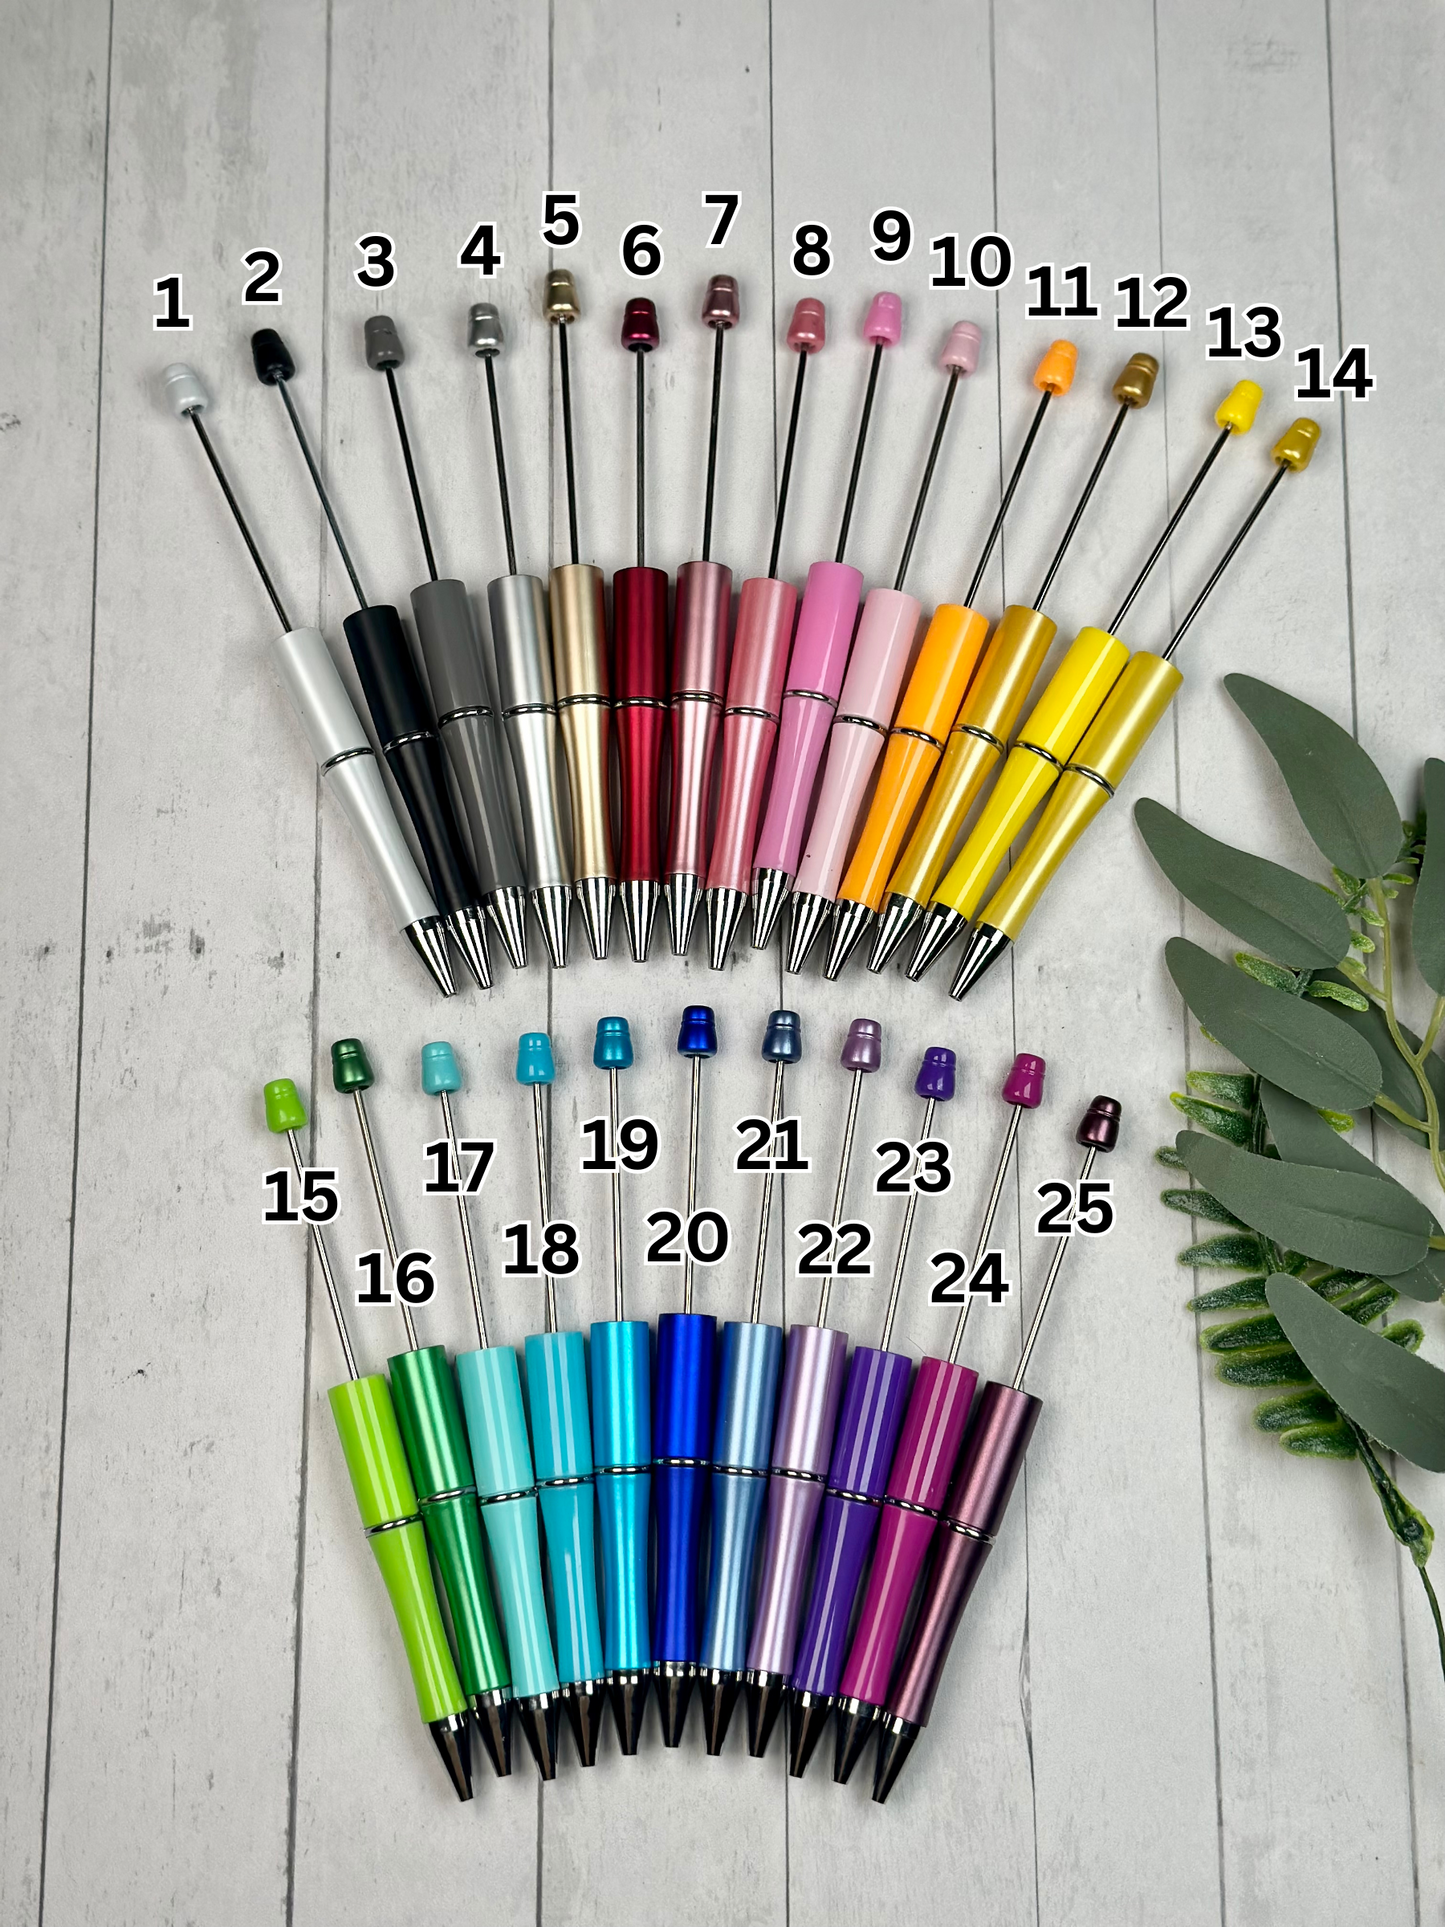 3 for 5.00 DIY Green Shimmer Beadable Pen Blanks, Beadable Pen, DIY Plastic  Beadable Pens, Black Ink 